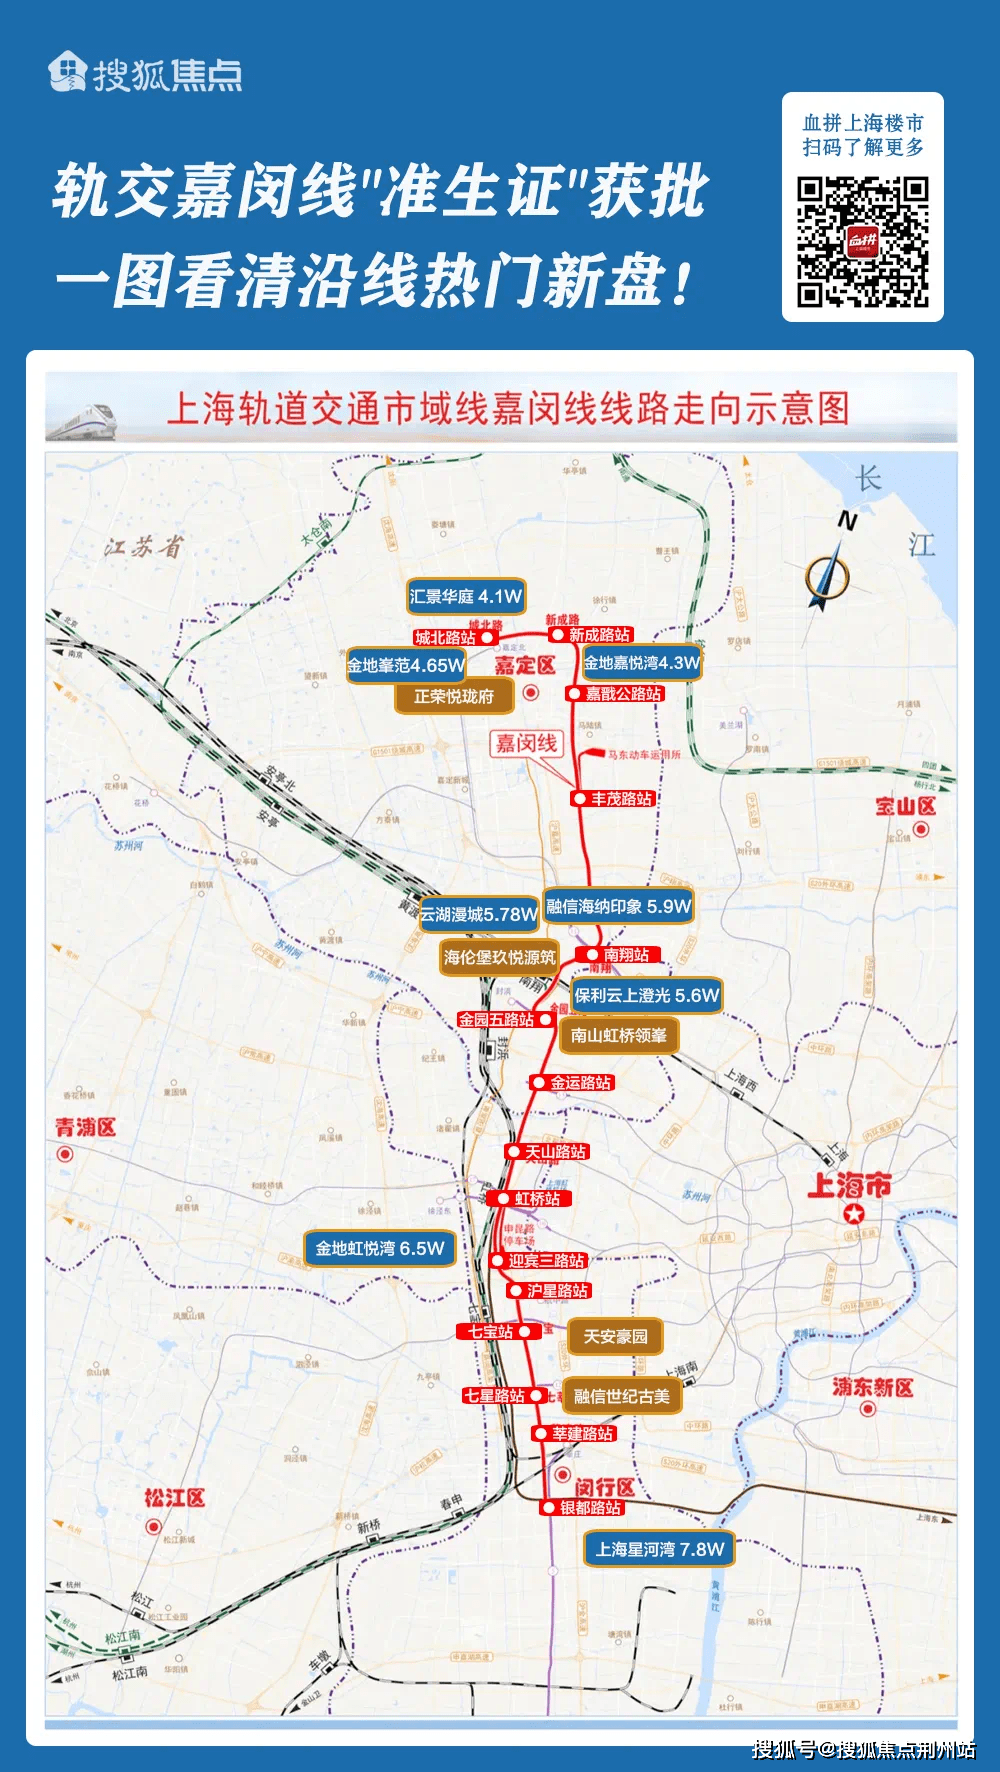 嘉定,闵行市民:嘉闵线6月28日开工 预计2025年竣工